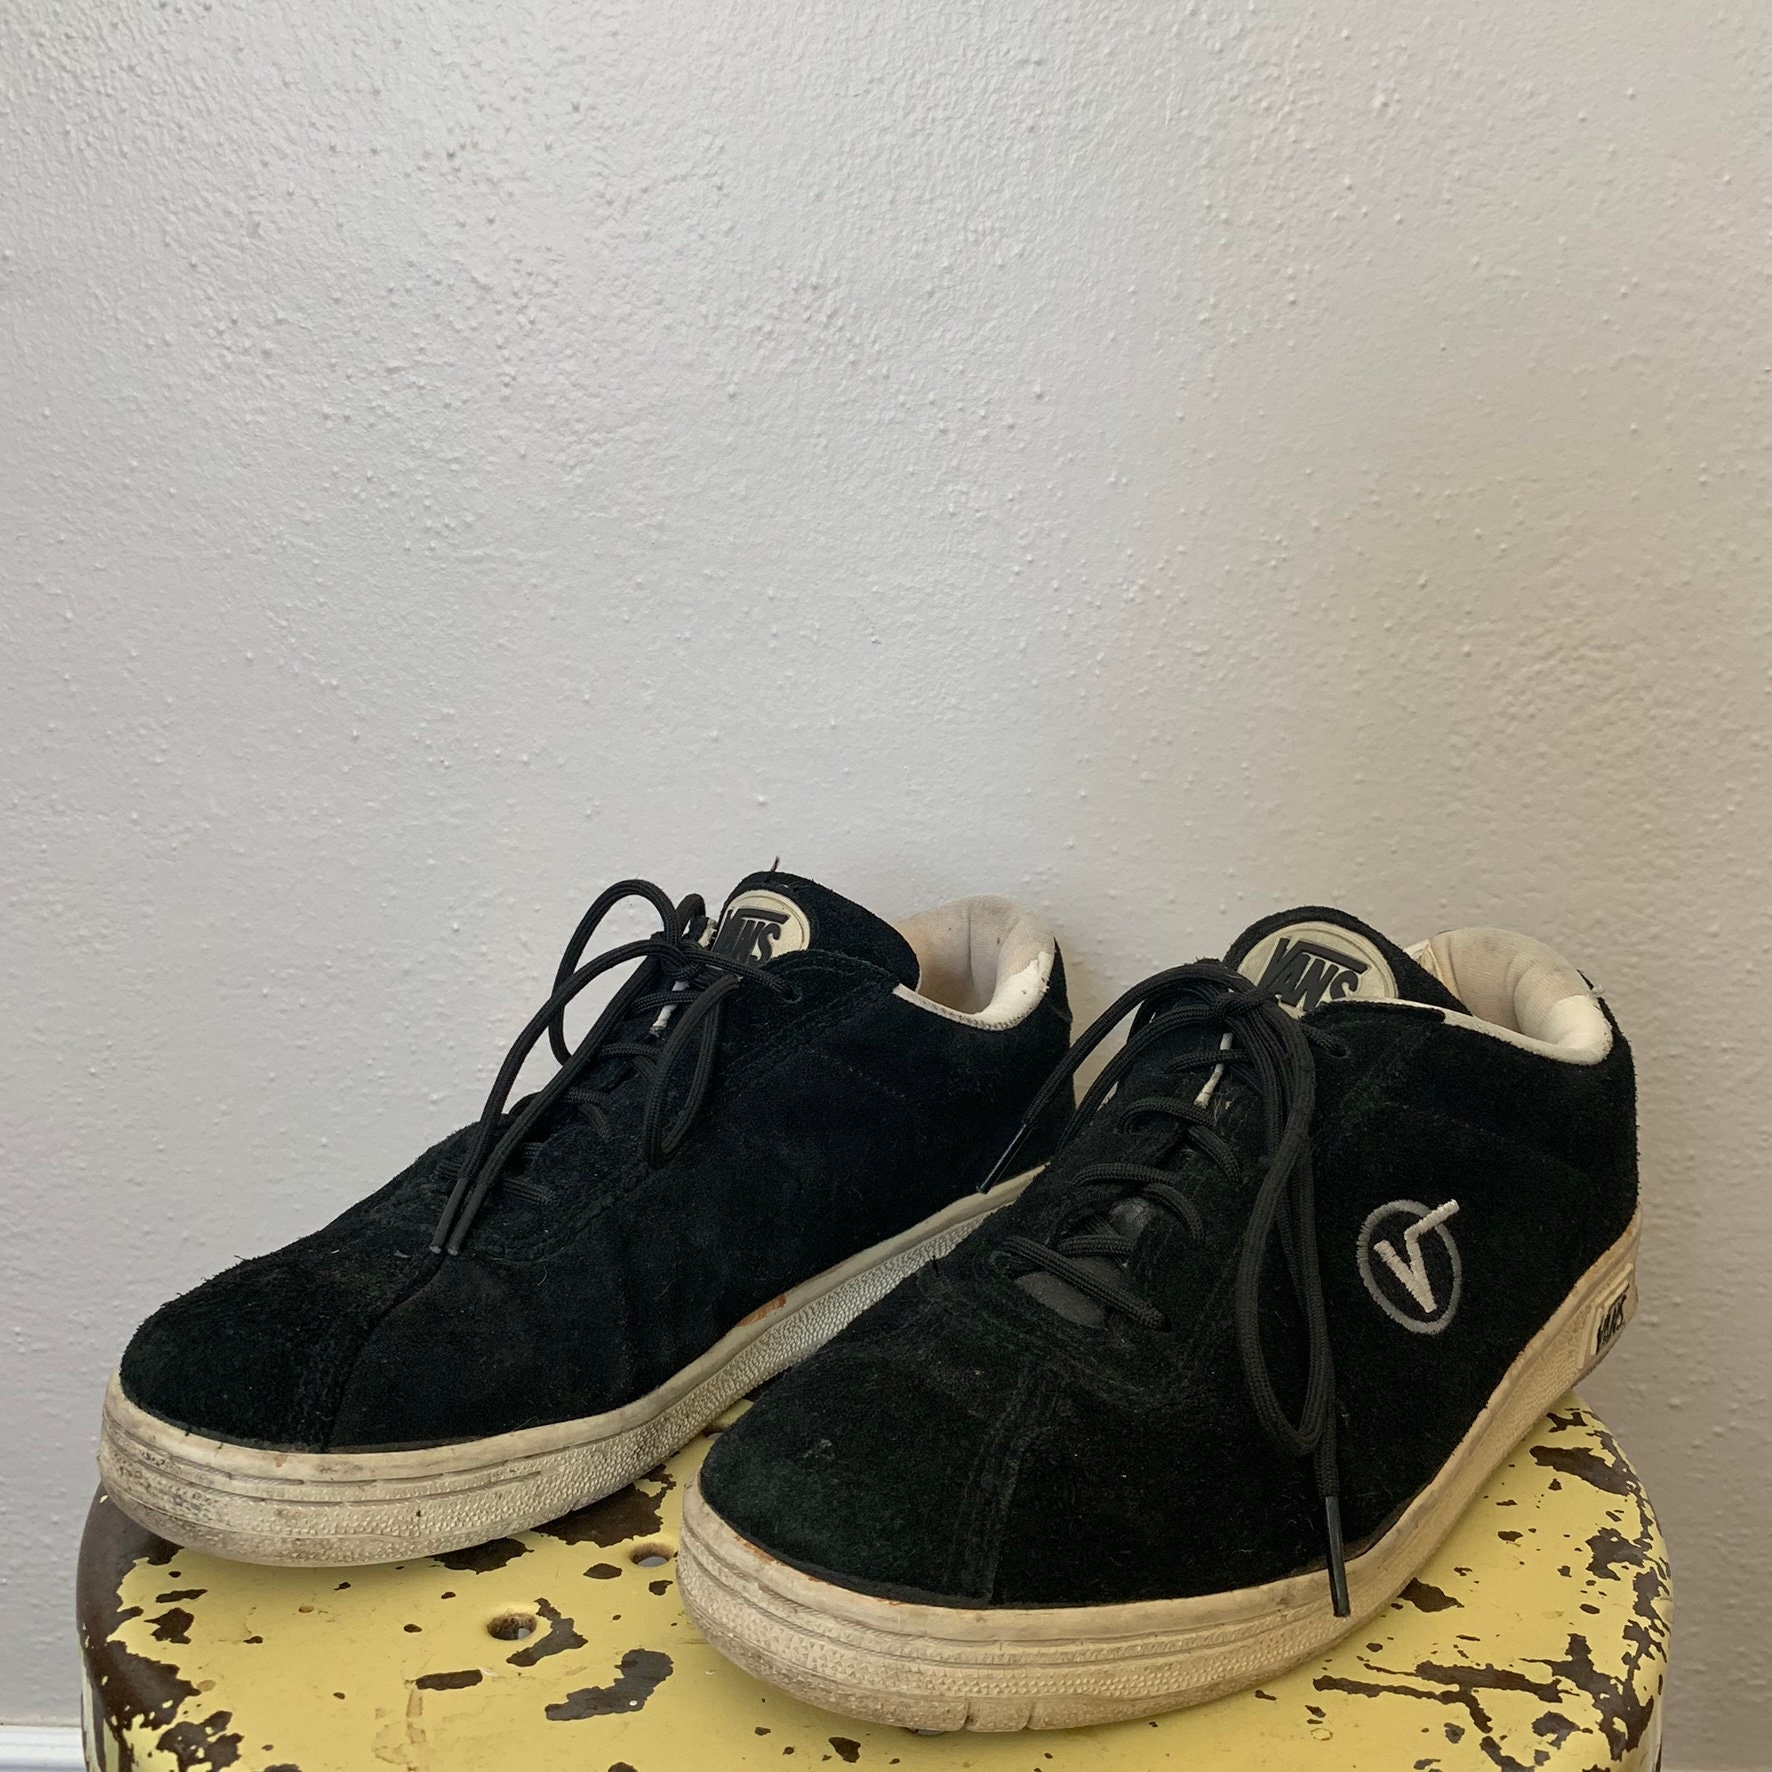 old vans skate shoes